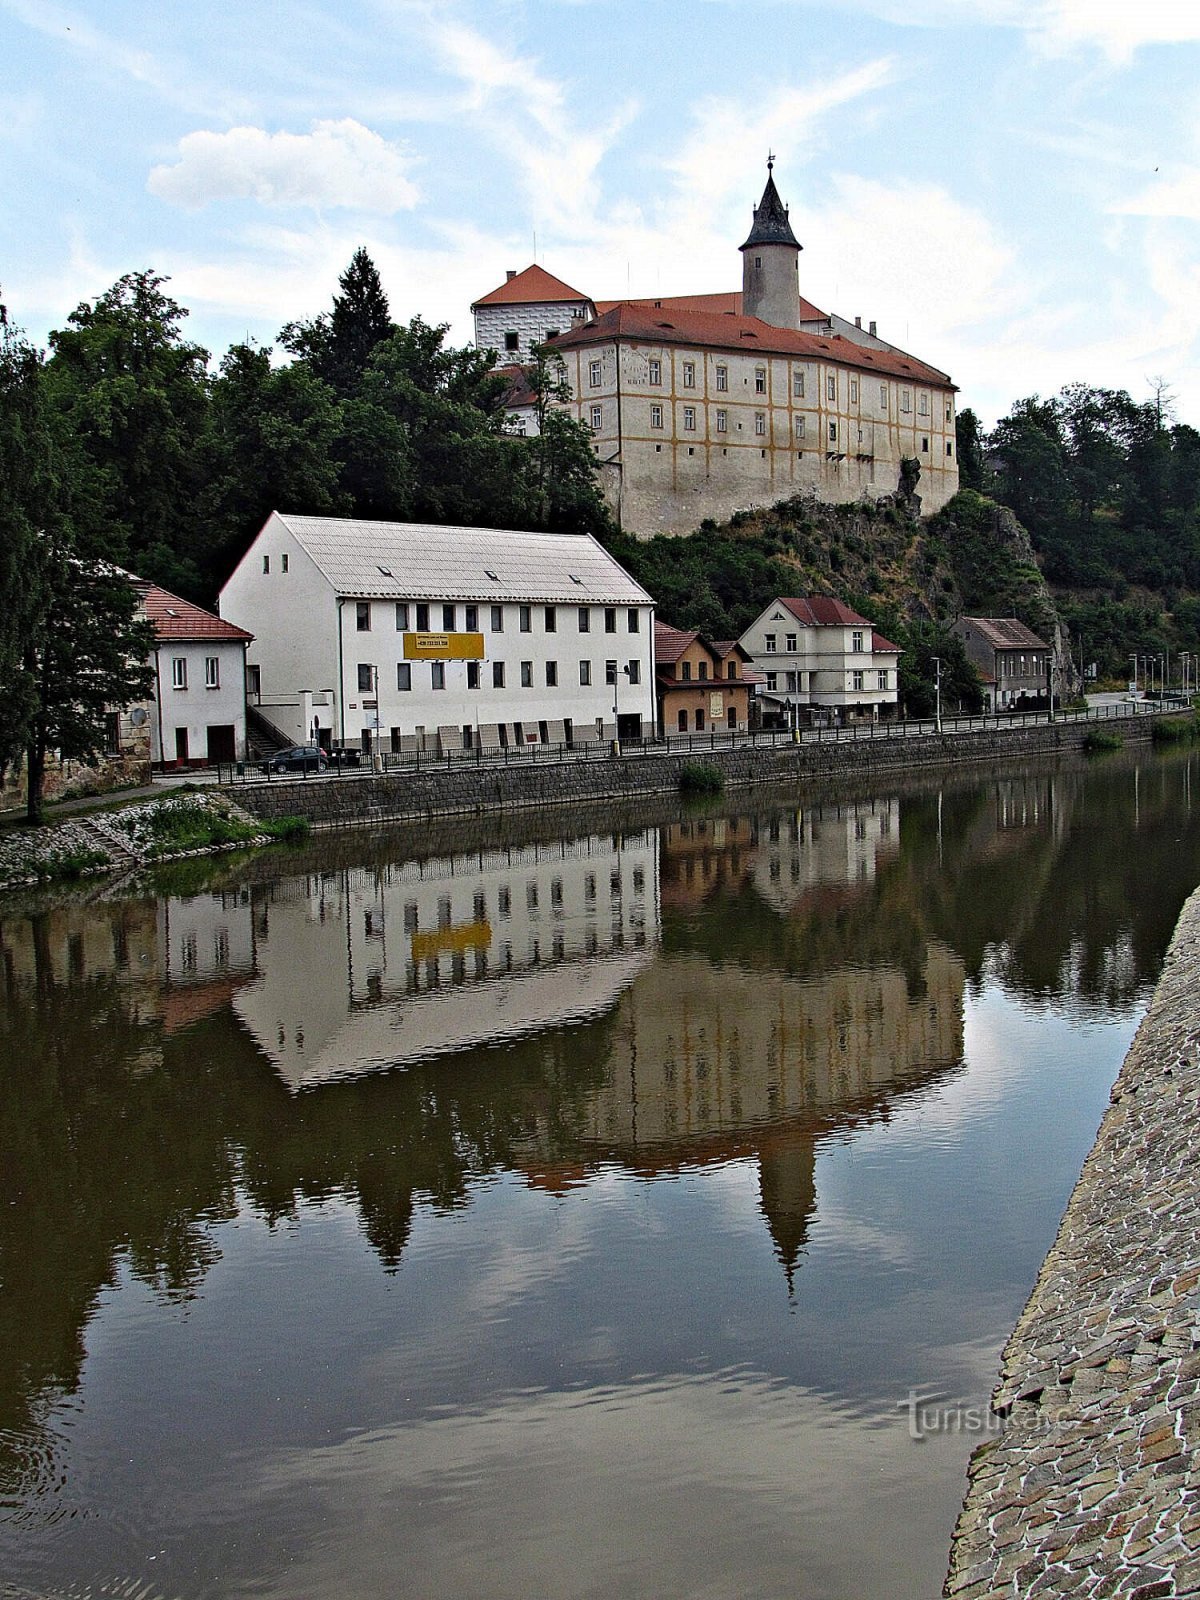 The grounds of the castle in Ledč nad Sázavou